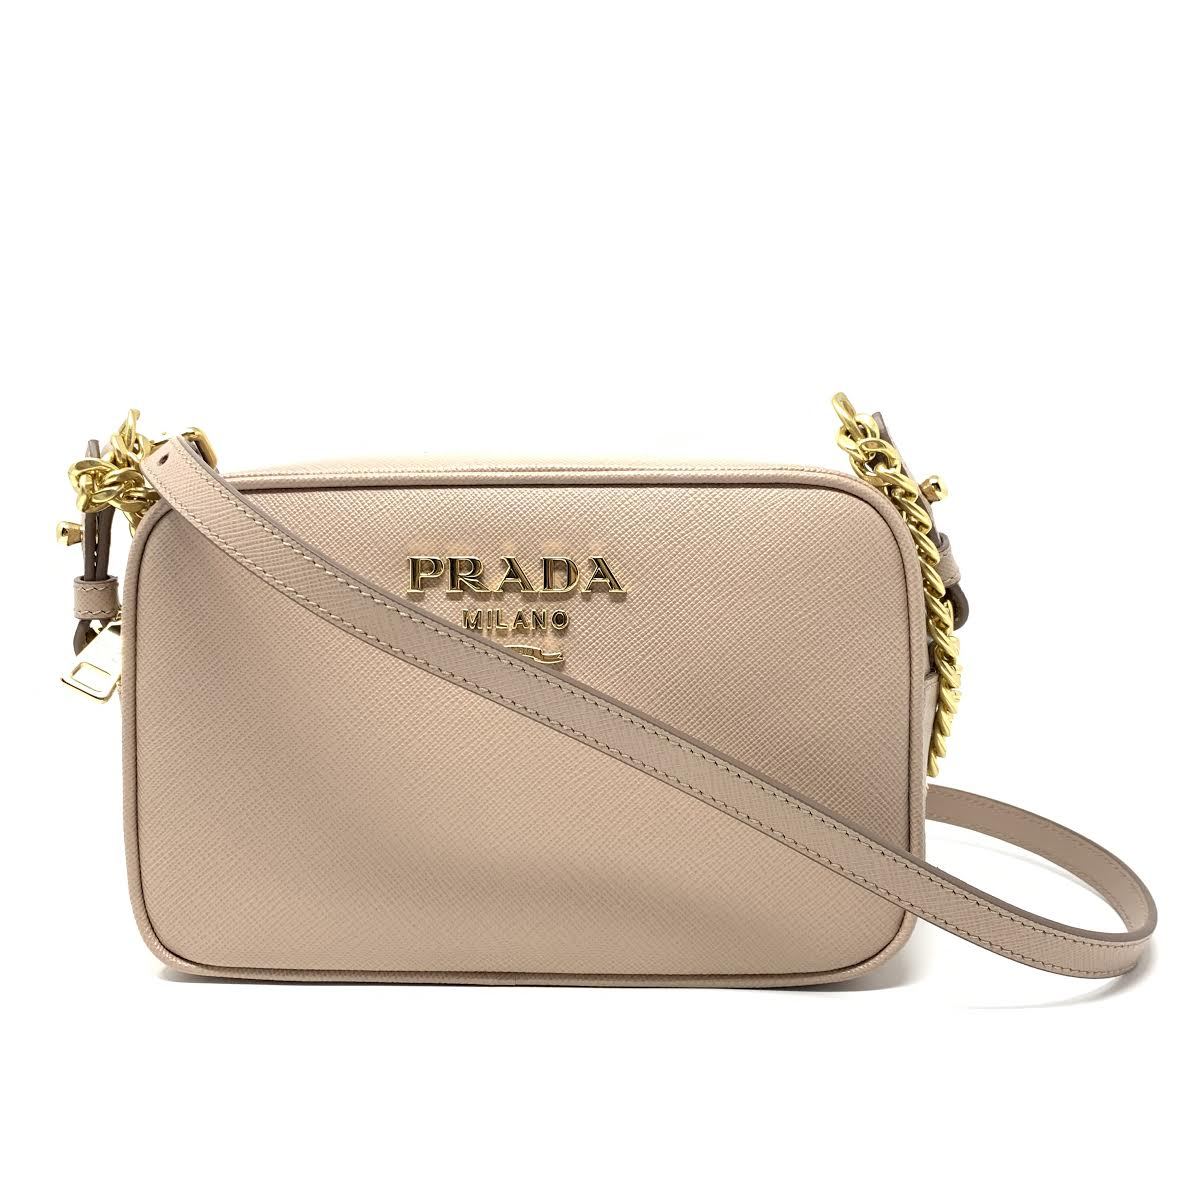 Prada Camera Handbags